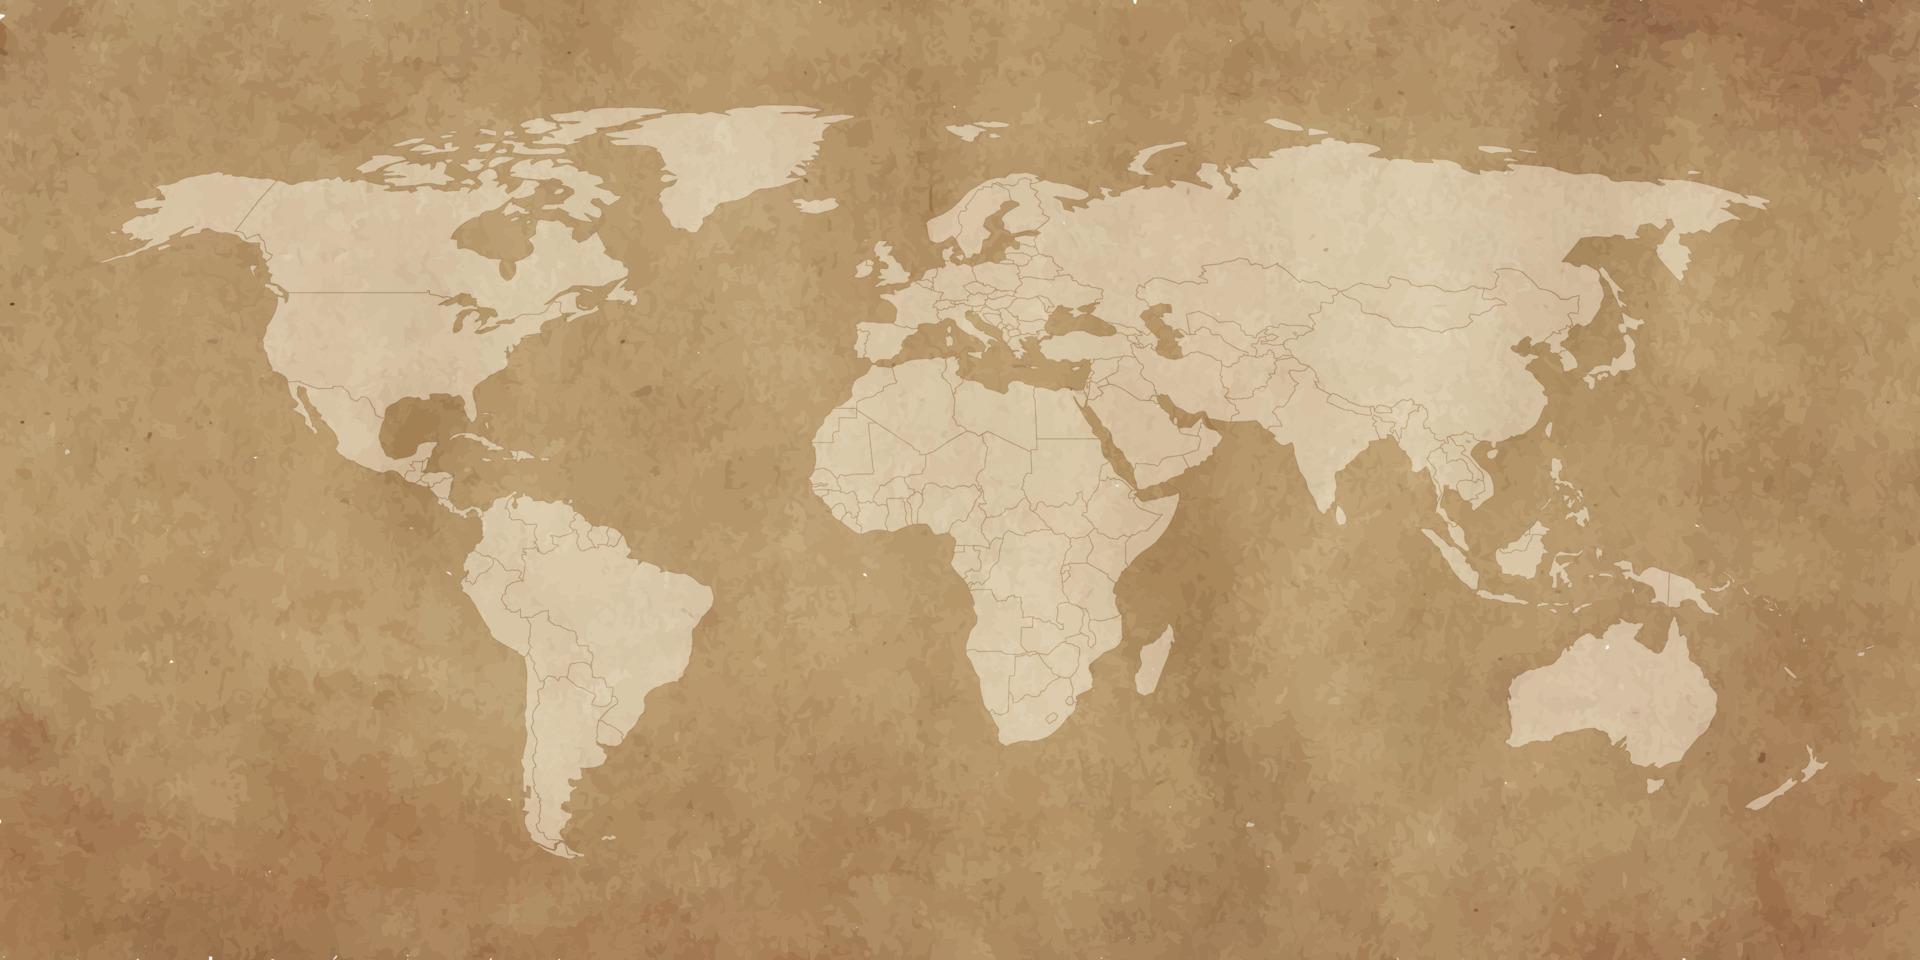 Weltkartenvorlage mit Kontinenten, Nord- und Südamerika, Europa und Asien, Afrika und Australien vektor